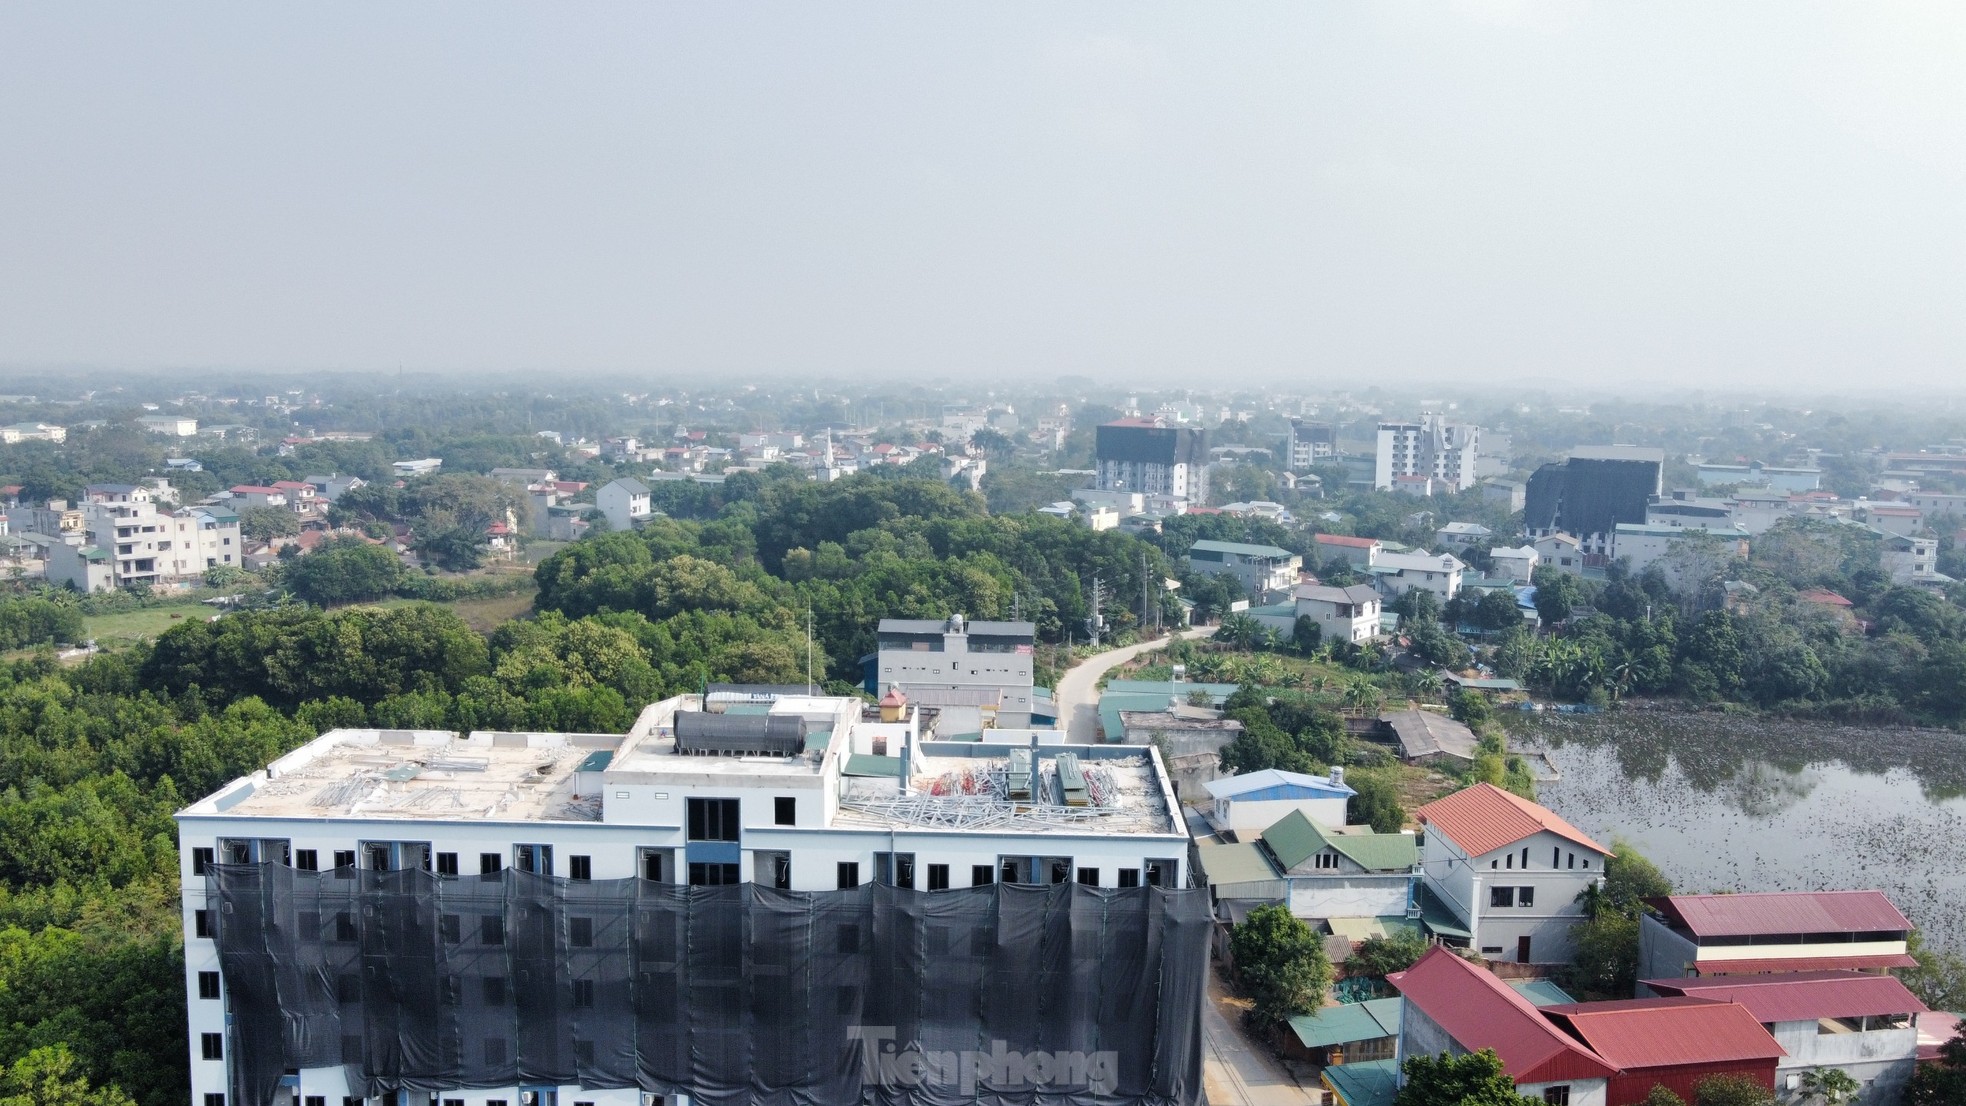 Thủ phủ chung cư mini sai phép ở ngoại thành Hà Nội ì ạch xử lý sai phạm - Ảnh 5.